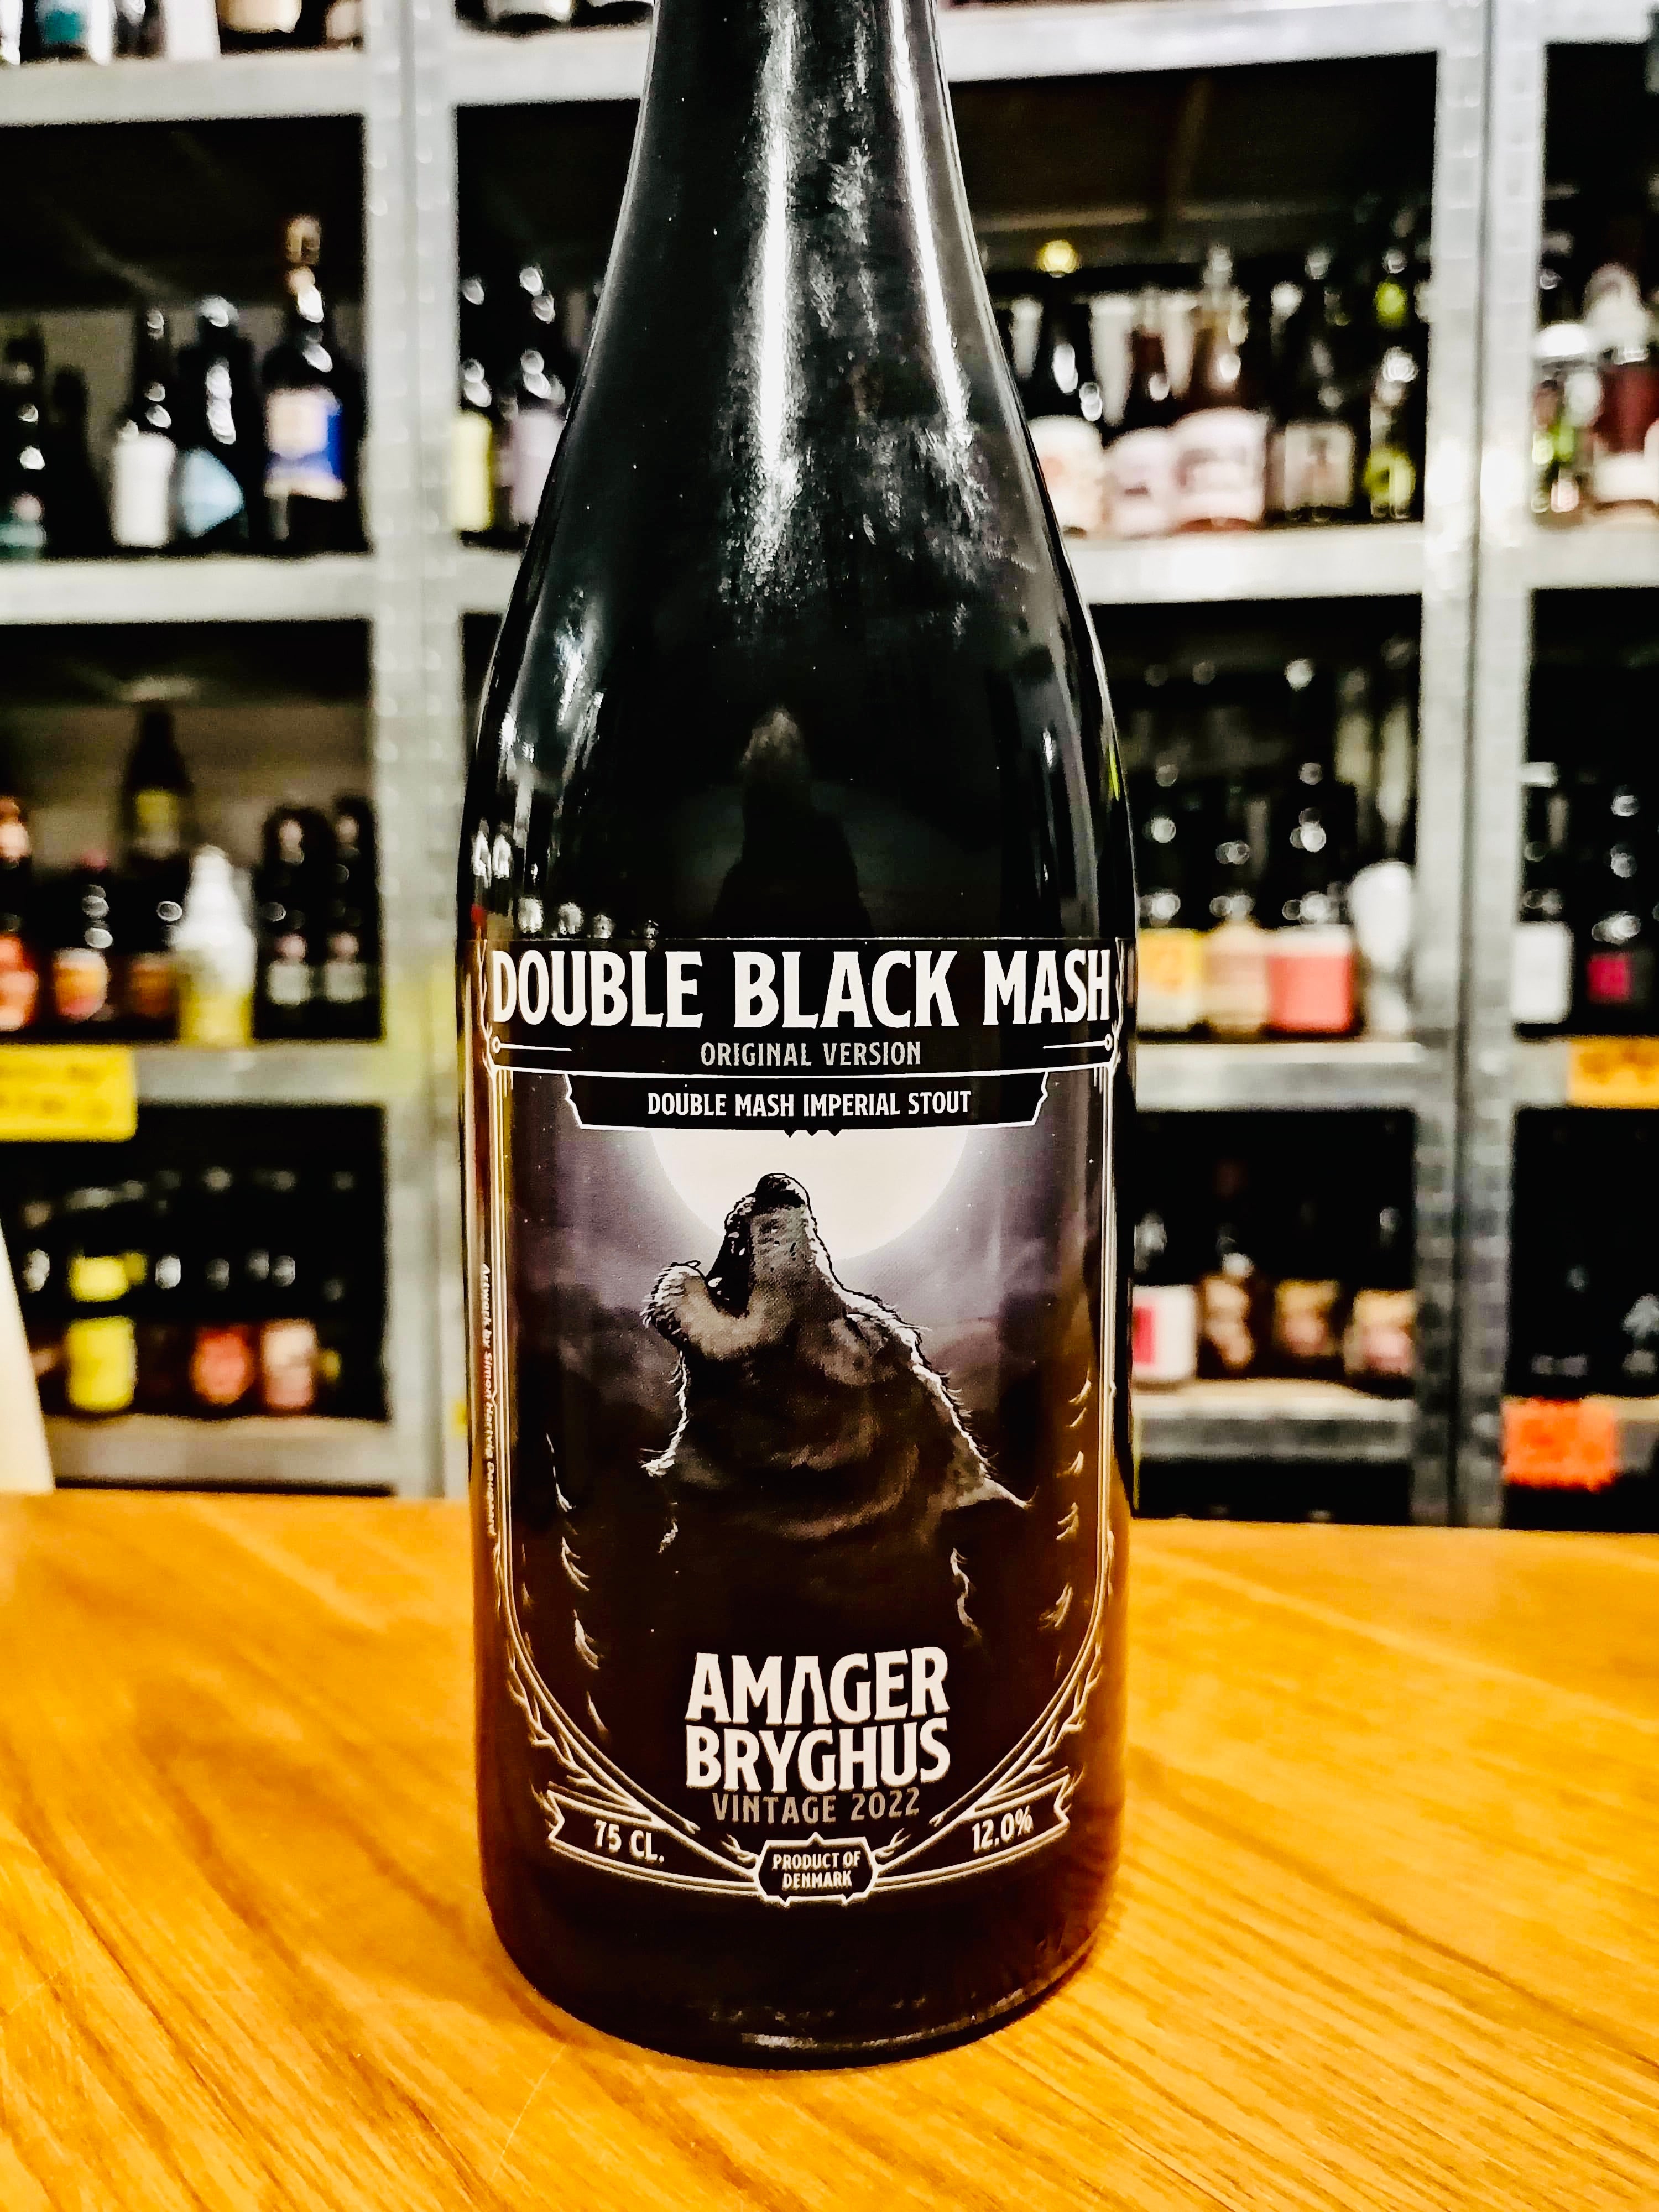 Brug Double black mash vintage 2023 (original) - Amager bryghus til en forbedret oplevelse